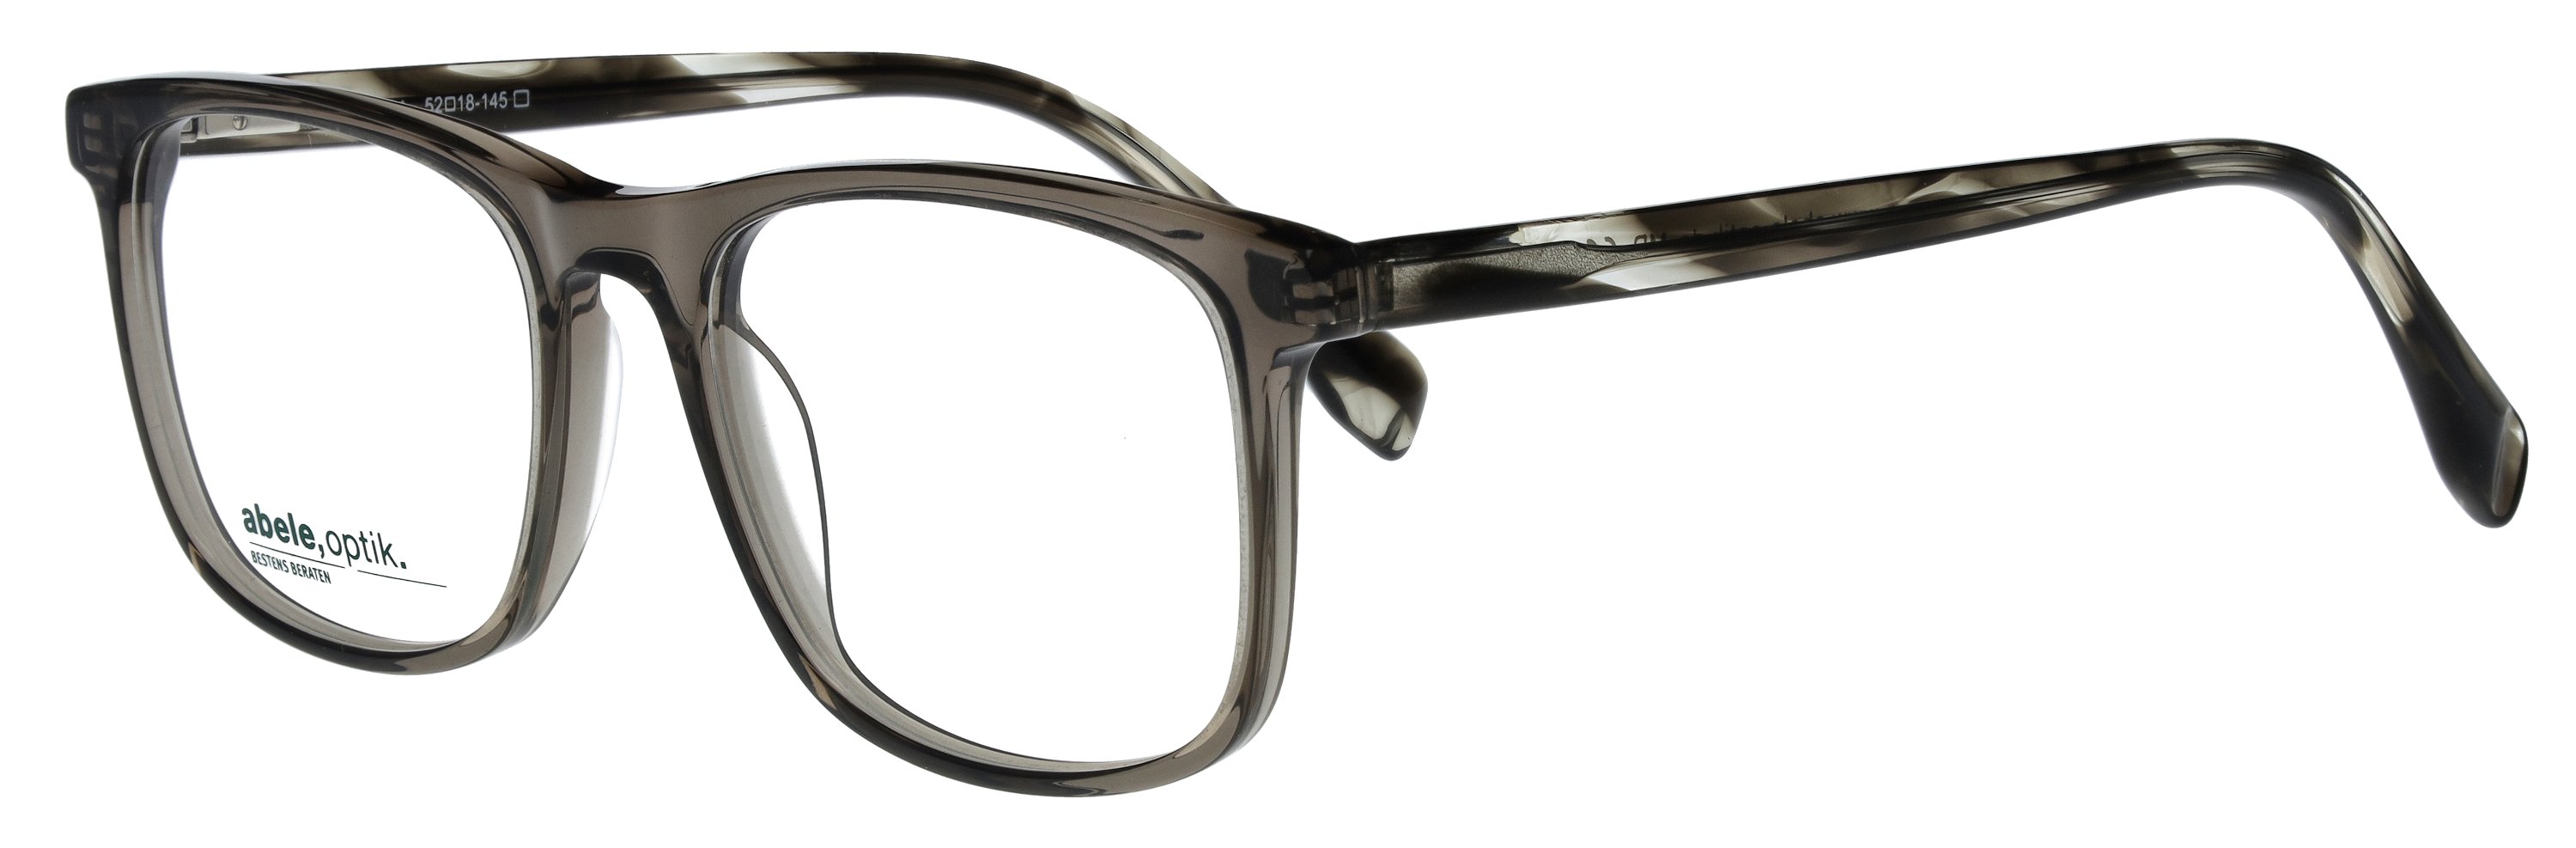 Das Bild zeigt die Korrektionsbrille 147981 von der Marke Abele Optik in grau transparent.